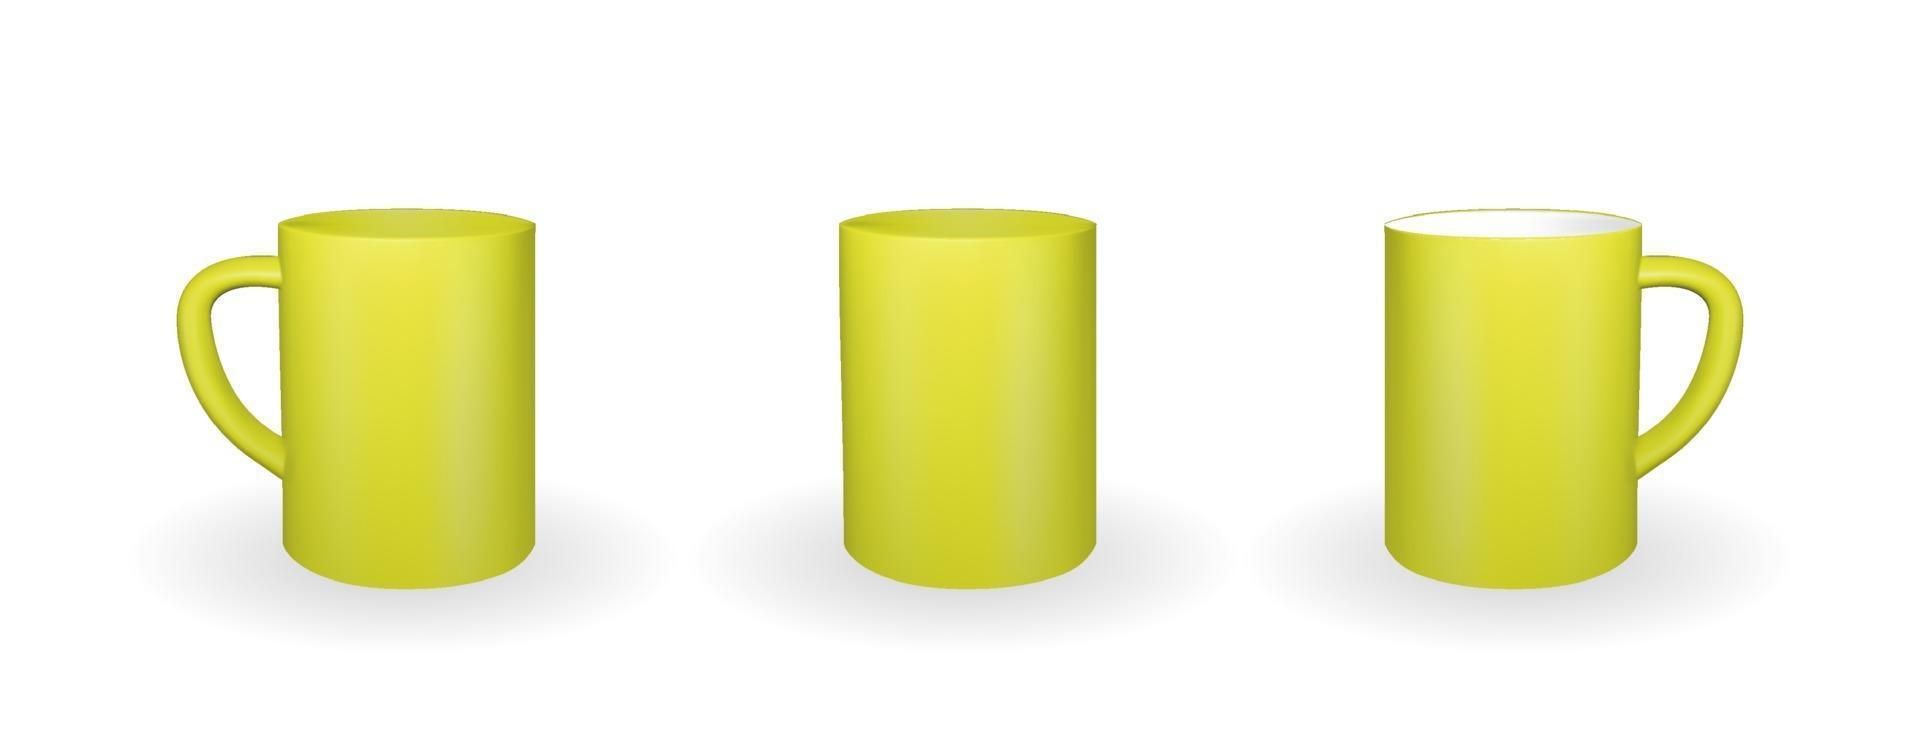 Satz realistischer gelber Becher auf weißem Hintergrund. 3D-Rendering. vektor